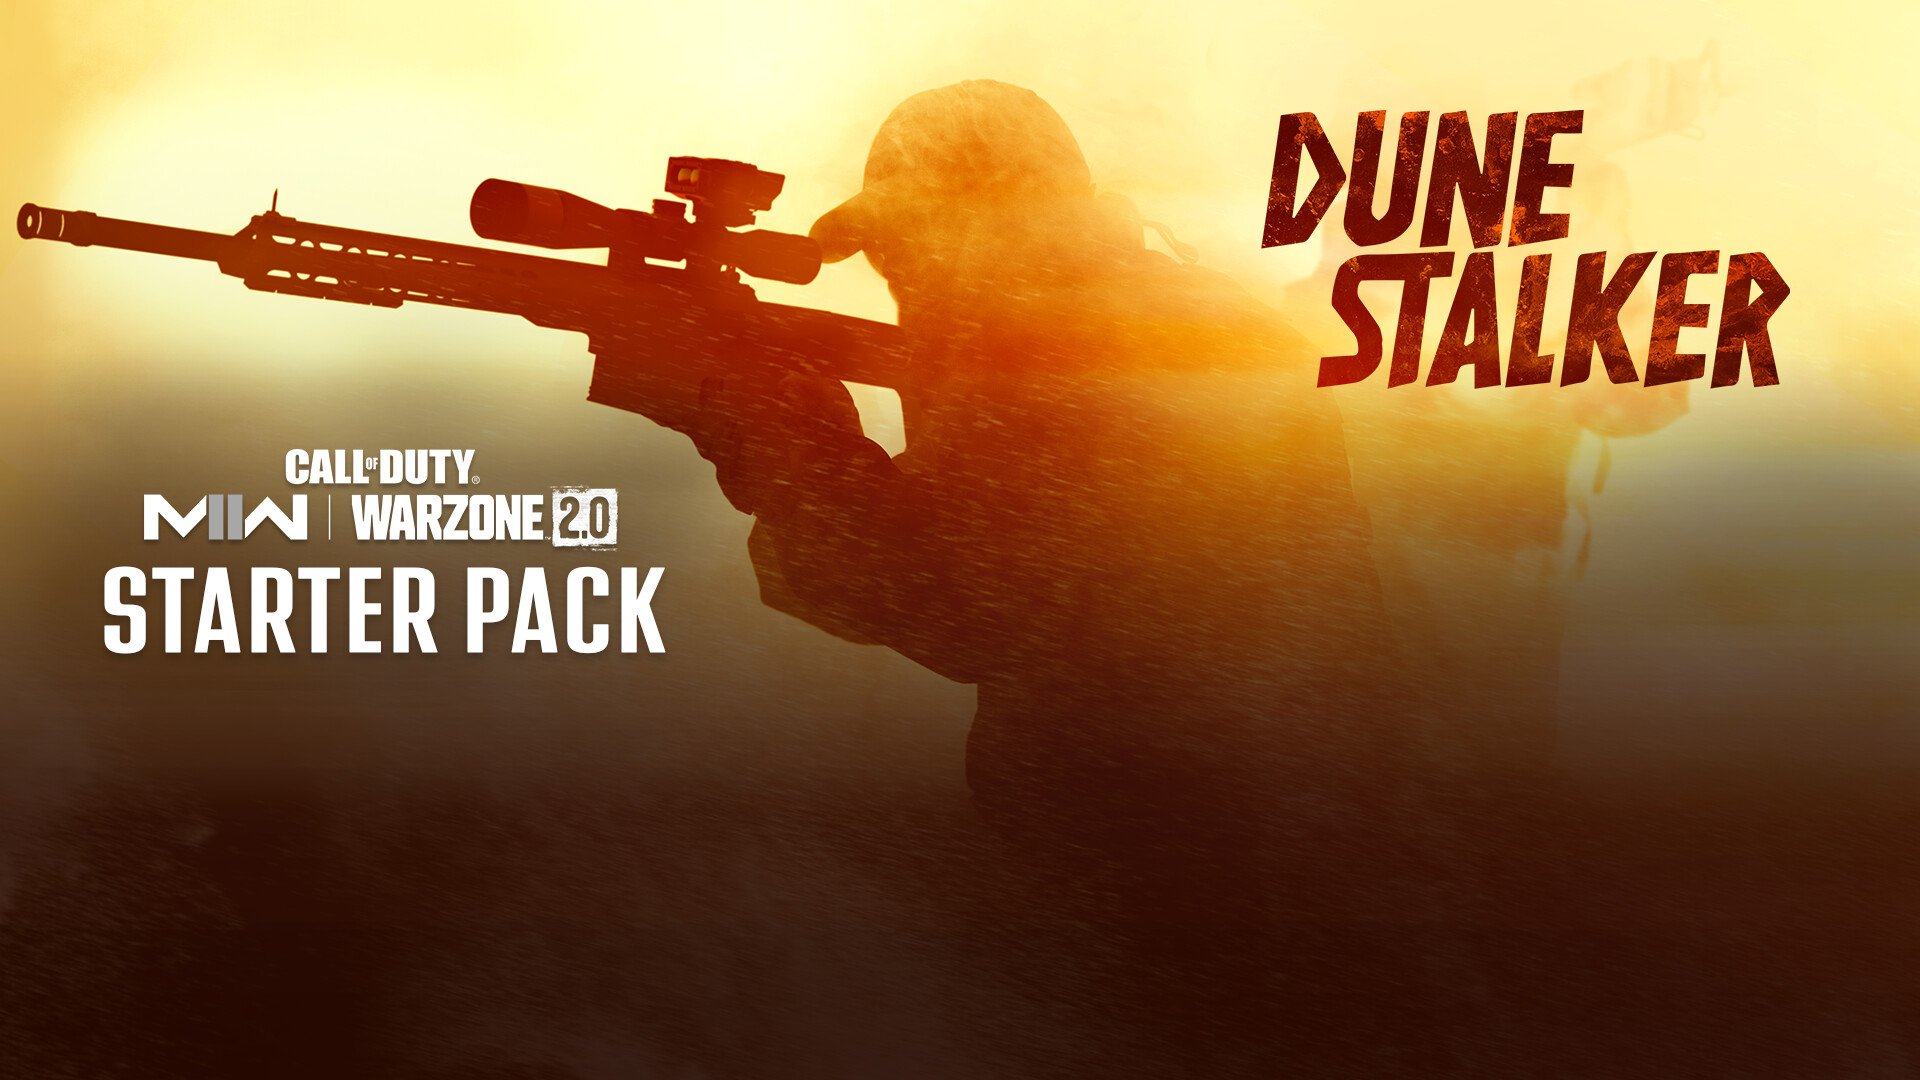 Call of Duty: Modern Warfare II - Dune Stalker: Starter Pack DLC Steam Altergift [$ 13.93]